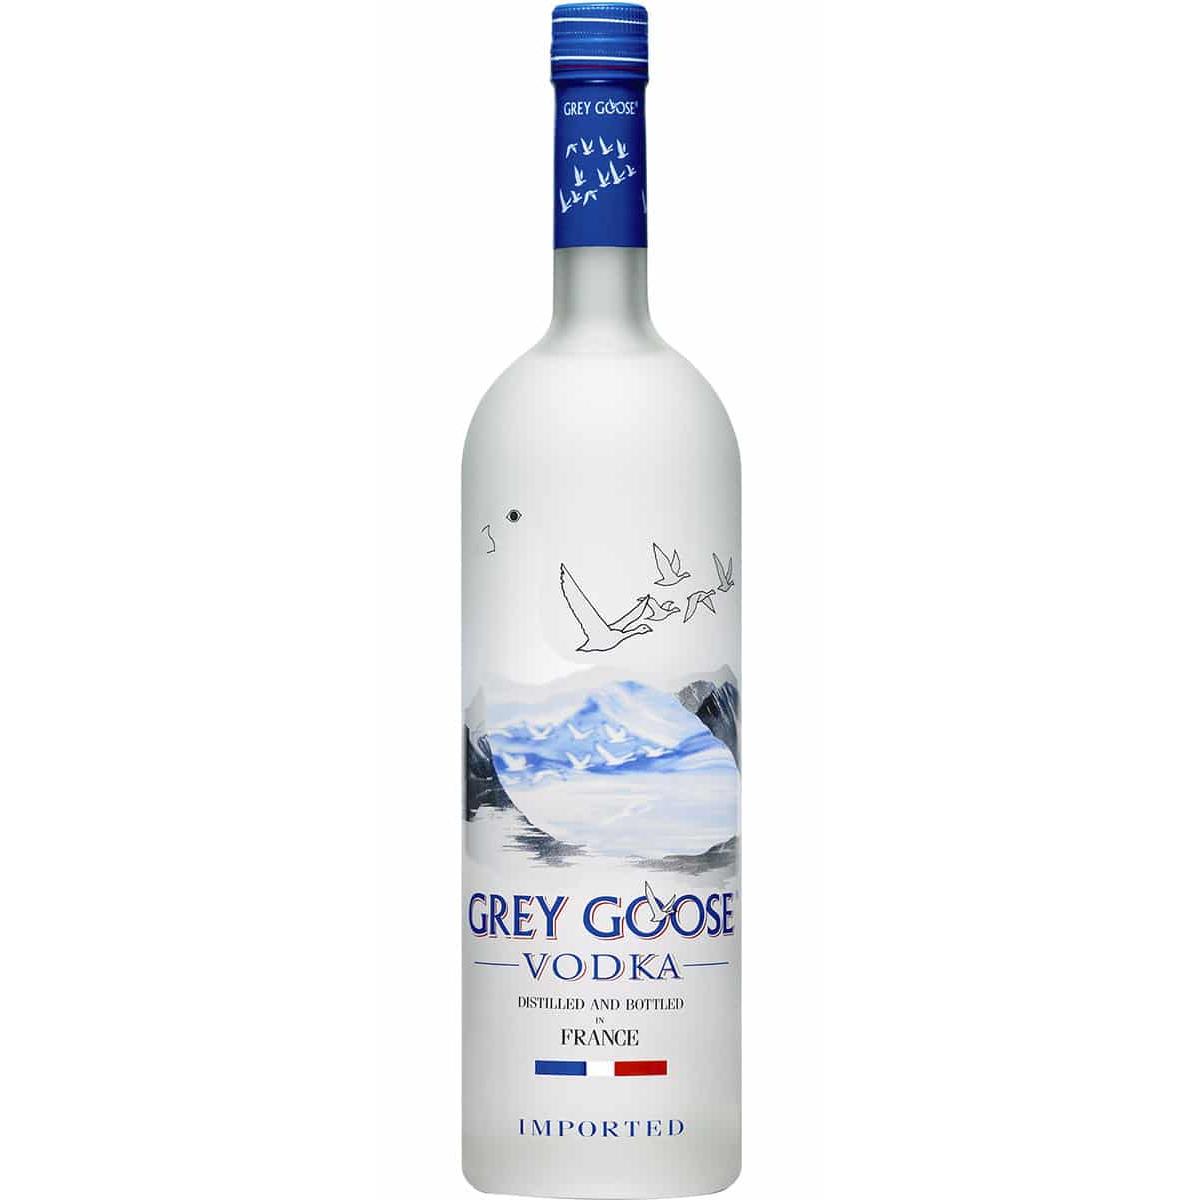 4) Grey Goose Vodka (France)